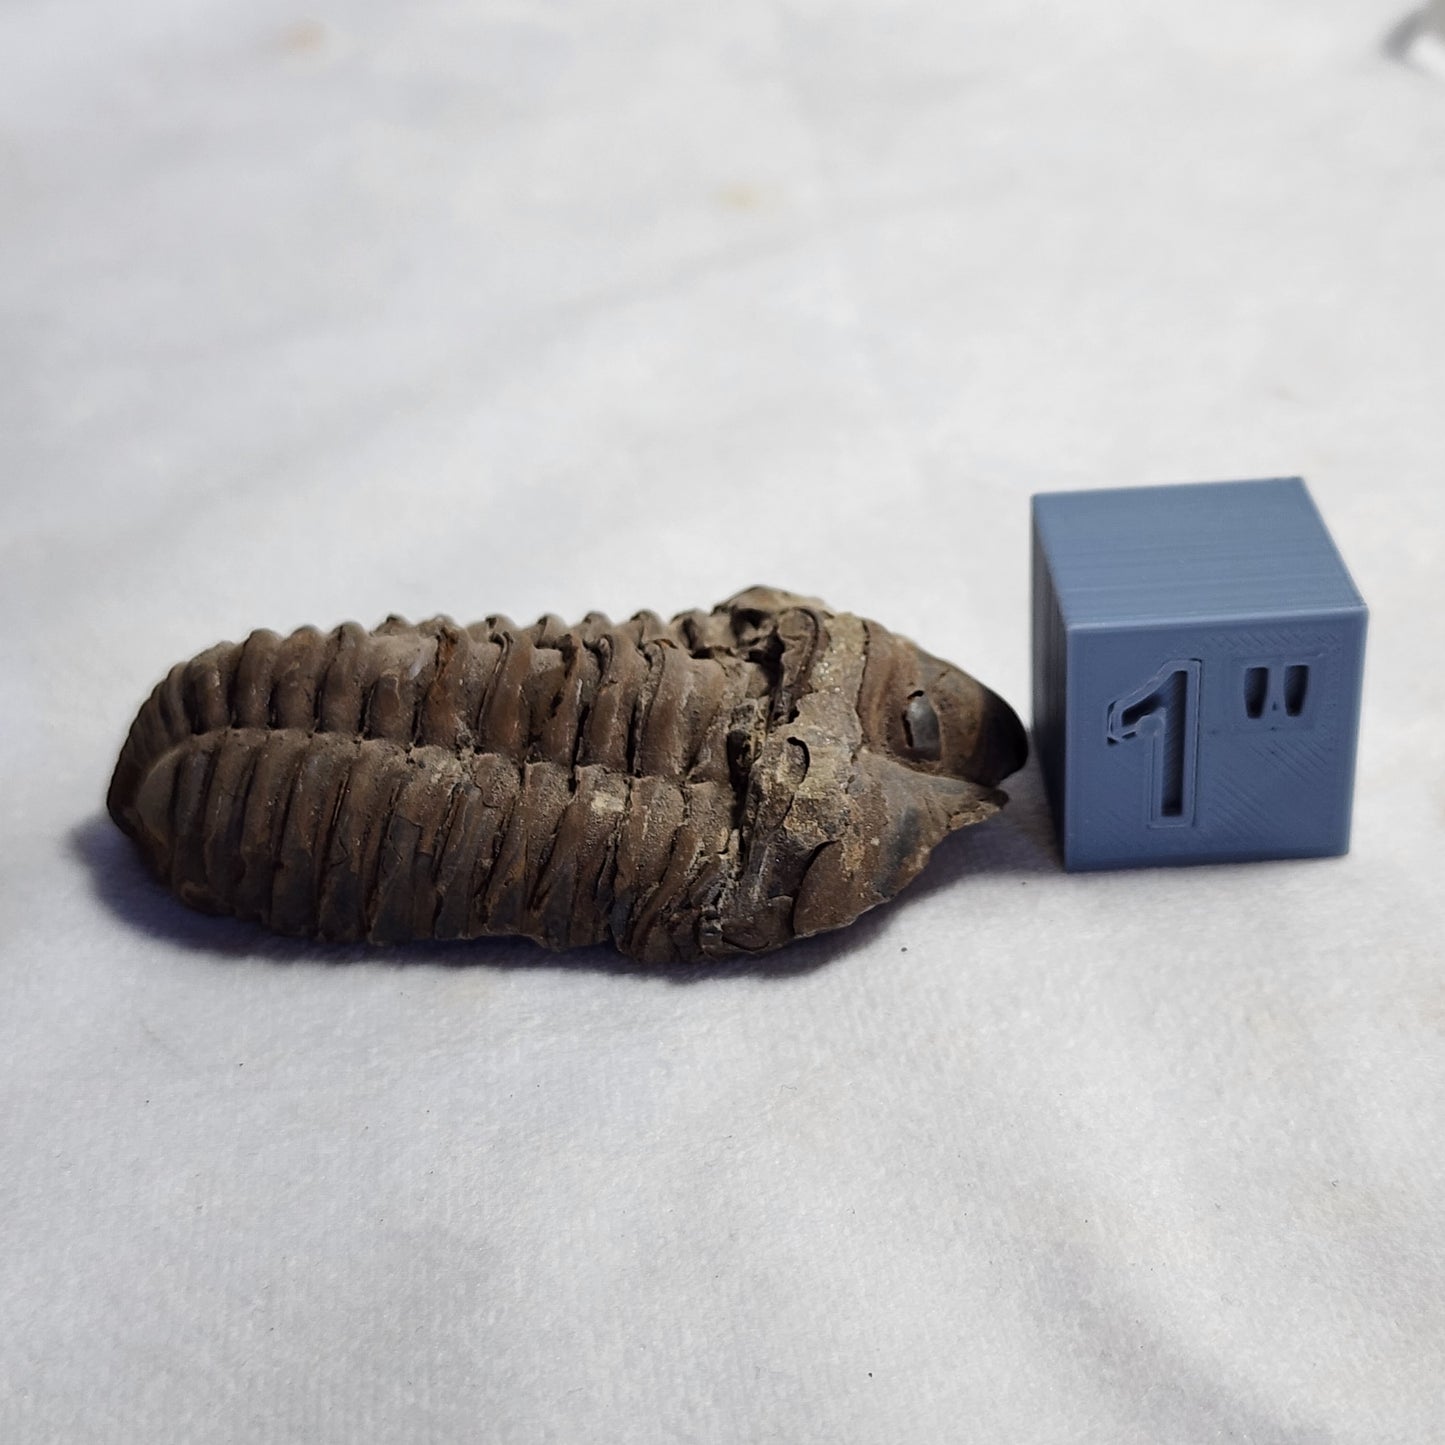 3.25" Flexicalymene Trilobite